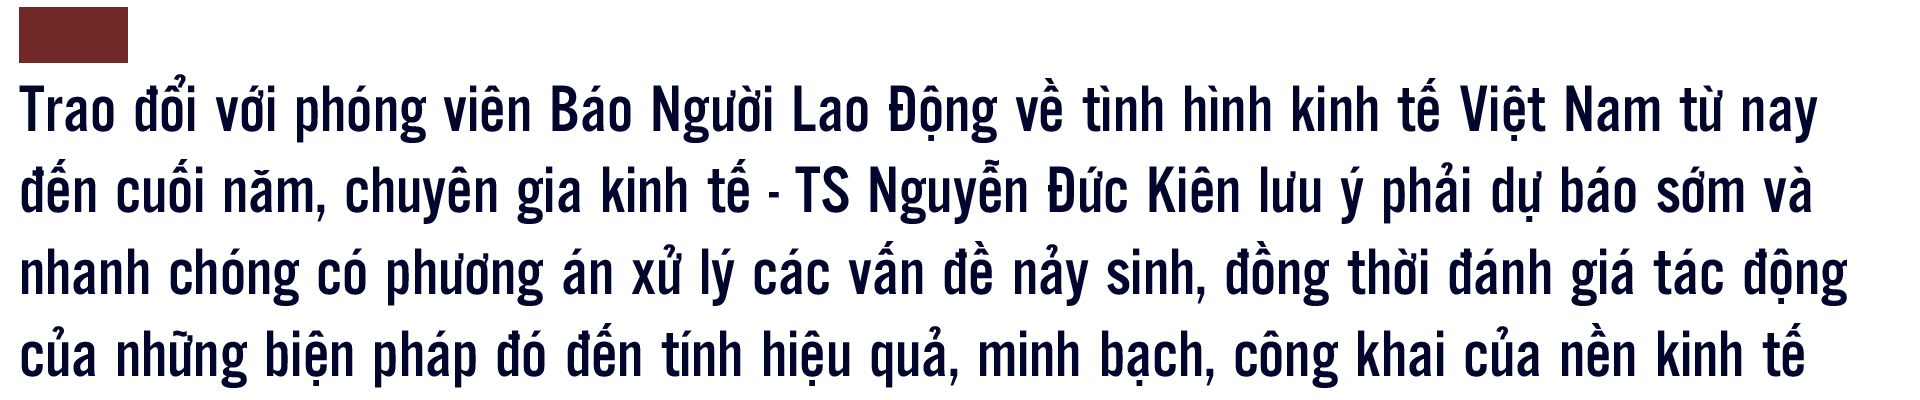 Thế giới biến động, Việt Nam gây ngạc nhiên: Đừng “nhăm nhăm” dự báo tốc độ tăng trưởng - Ảnh 1.